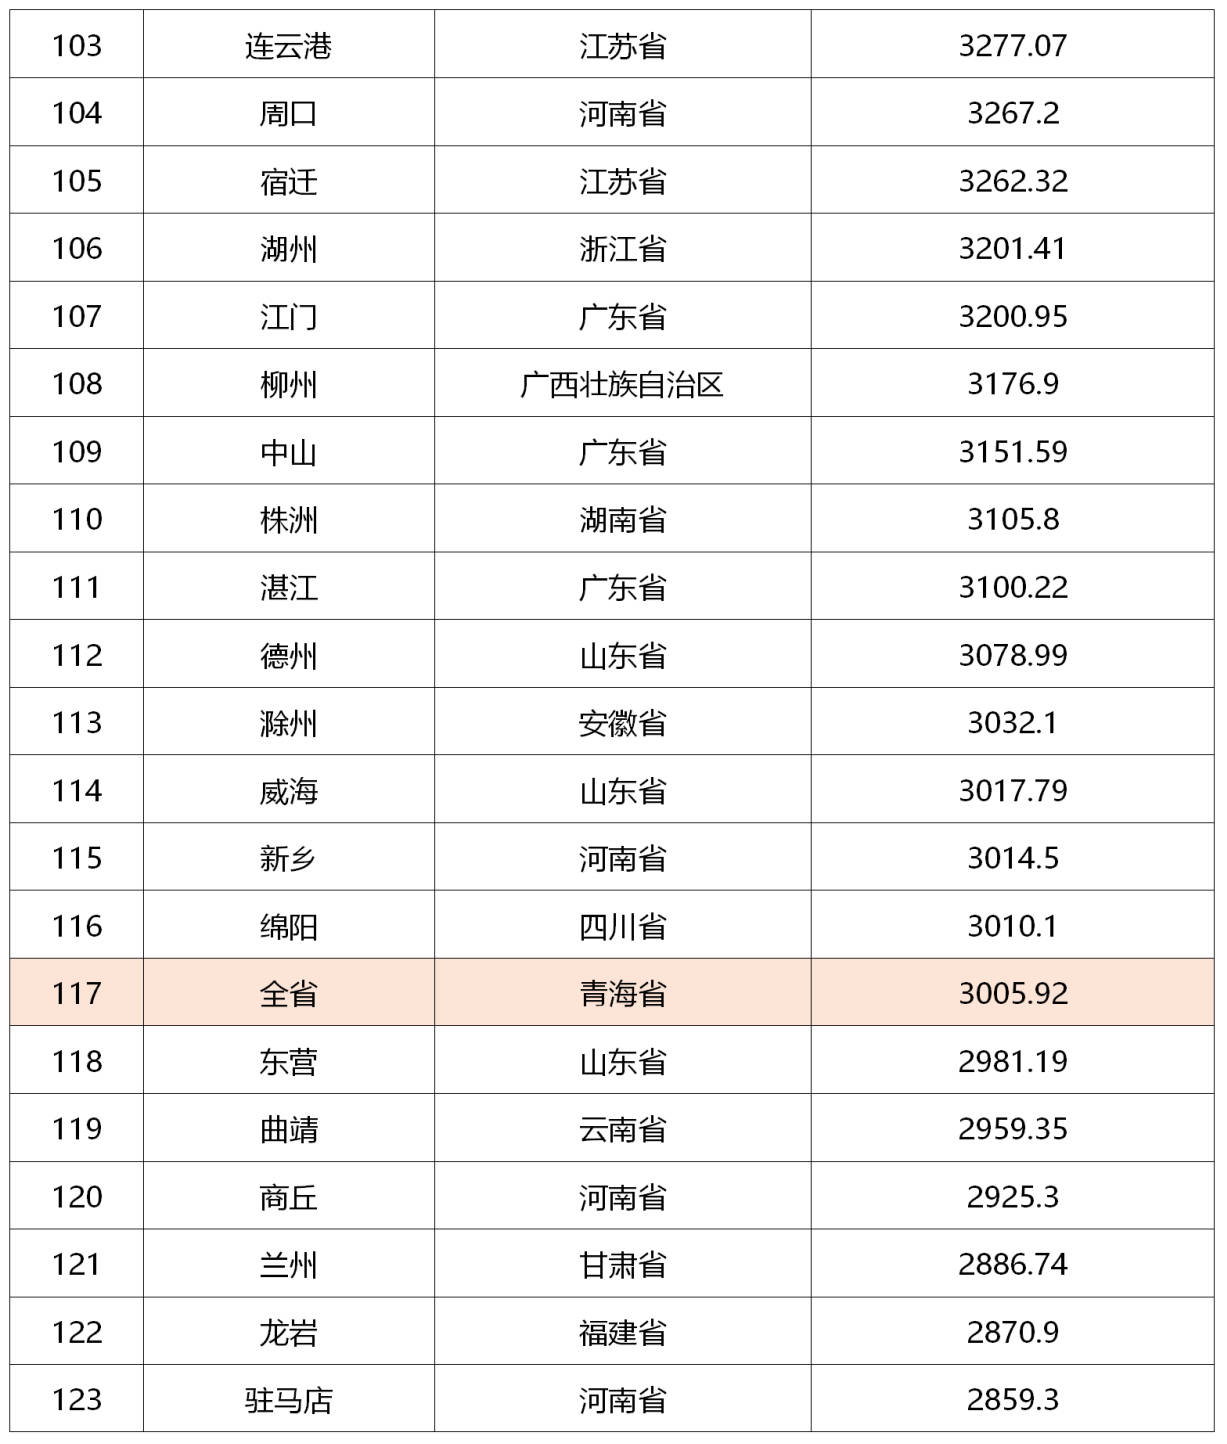 中国省会城市2020gdp排名榜_2020年各省市区GDP排名 新